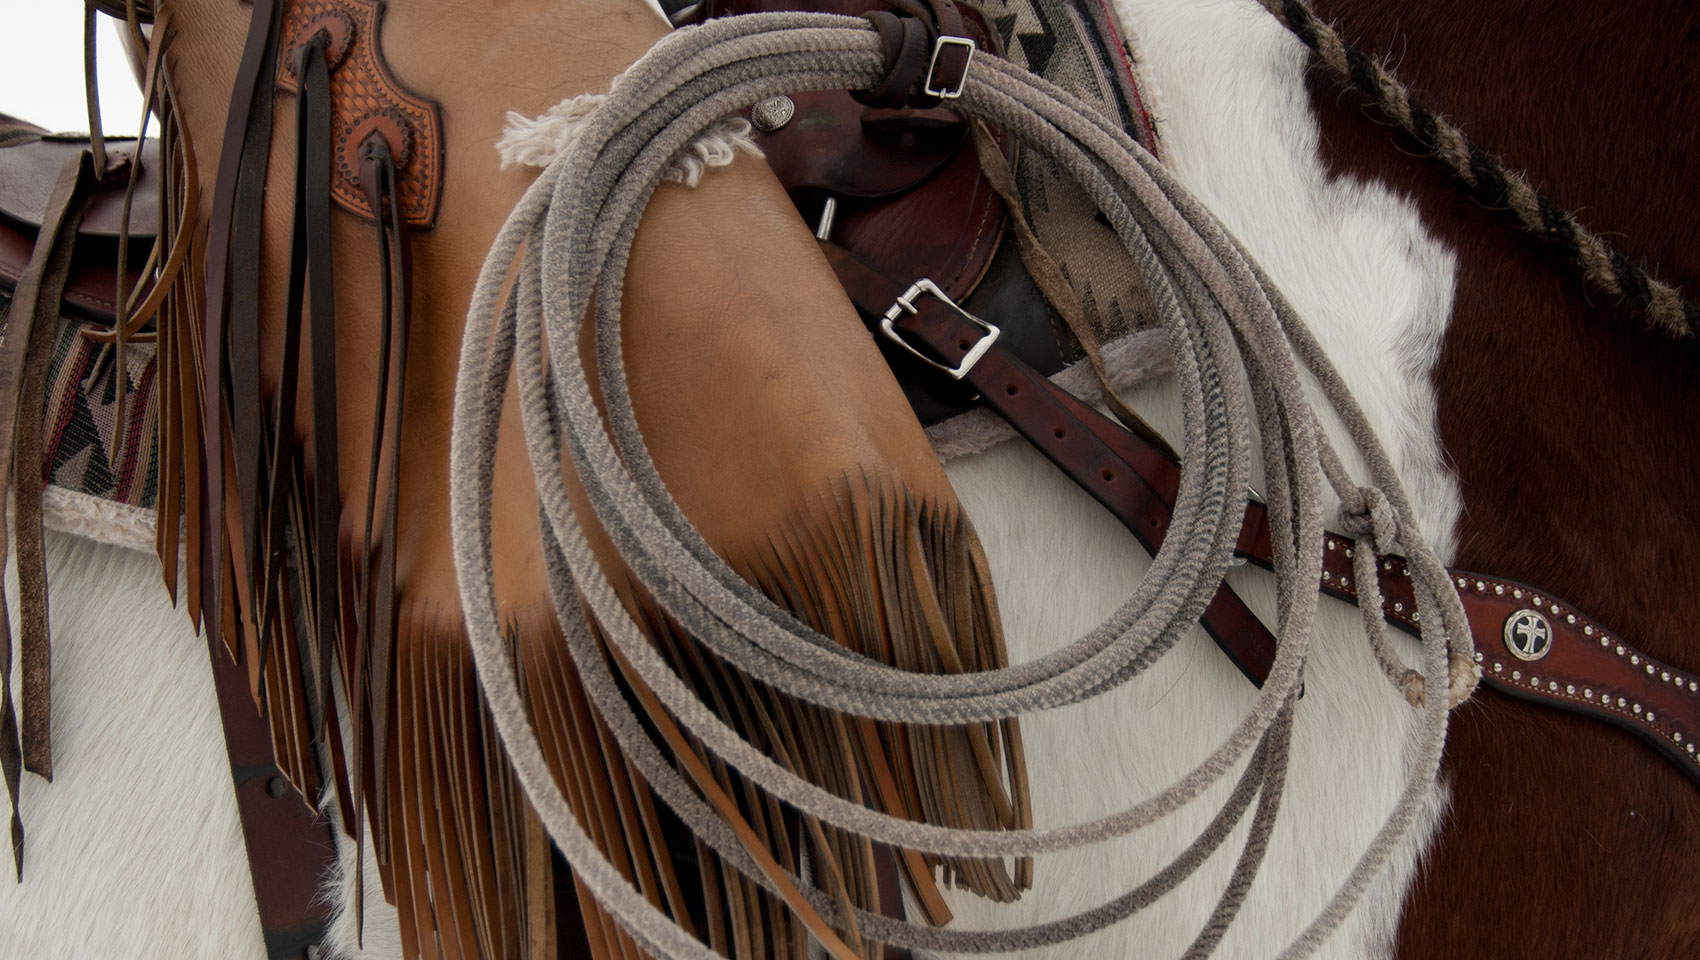 Rope & saddle